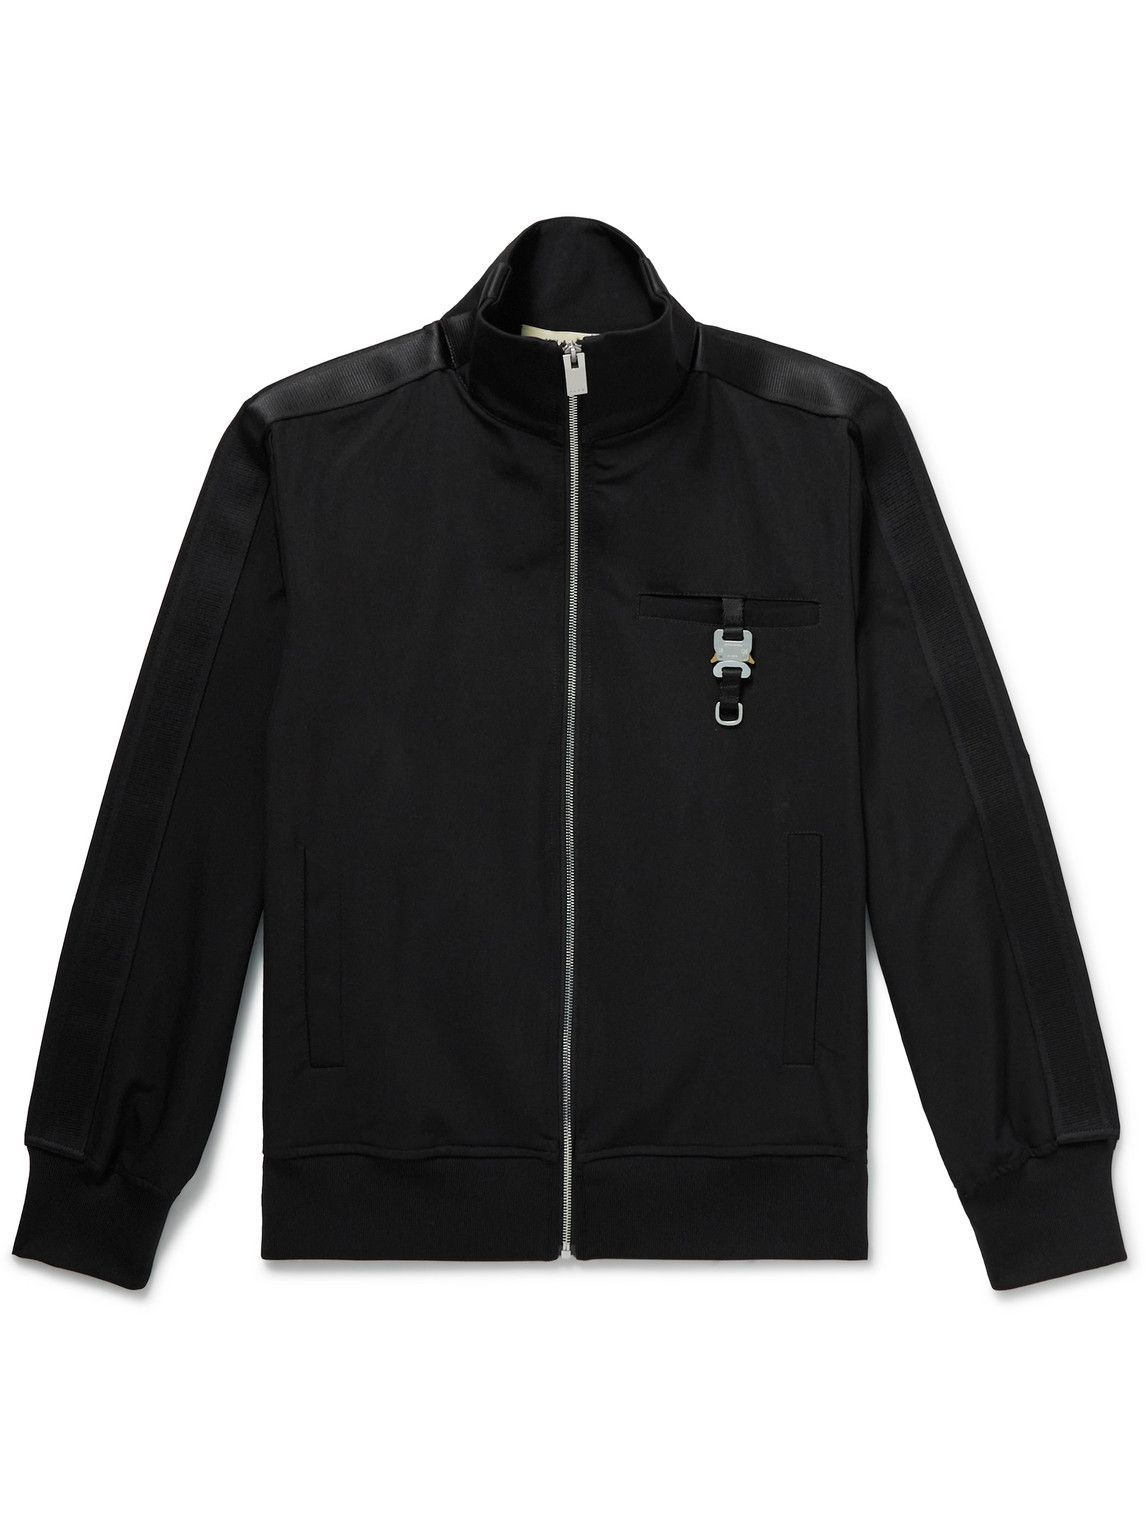 Photo: 1017 ALYX 9SM - Buckle-Embellished Webbing-Trimmed Jersey Track Jacket - Black